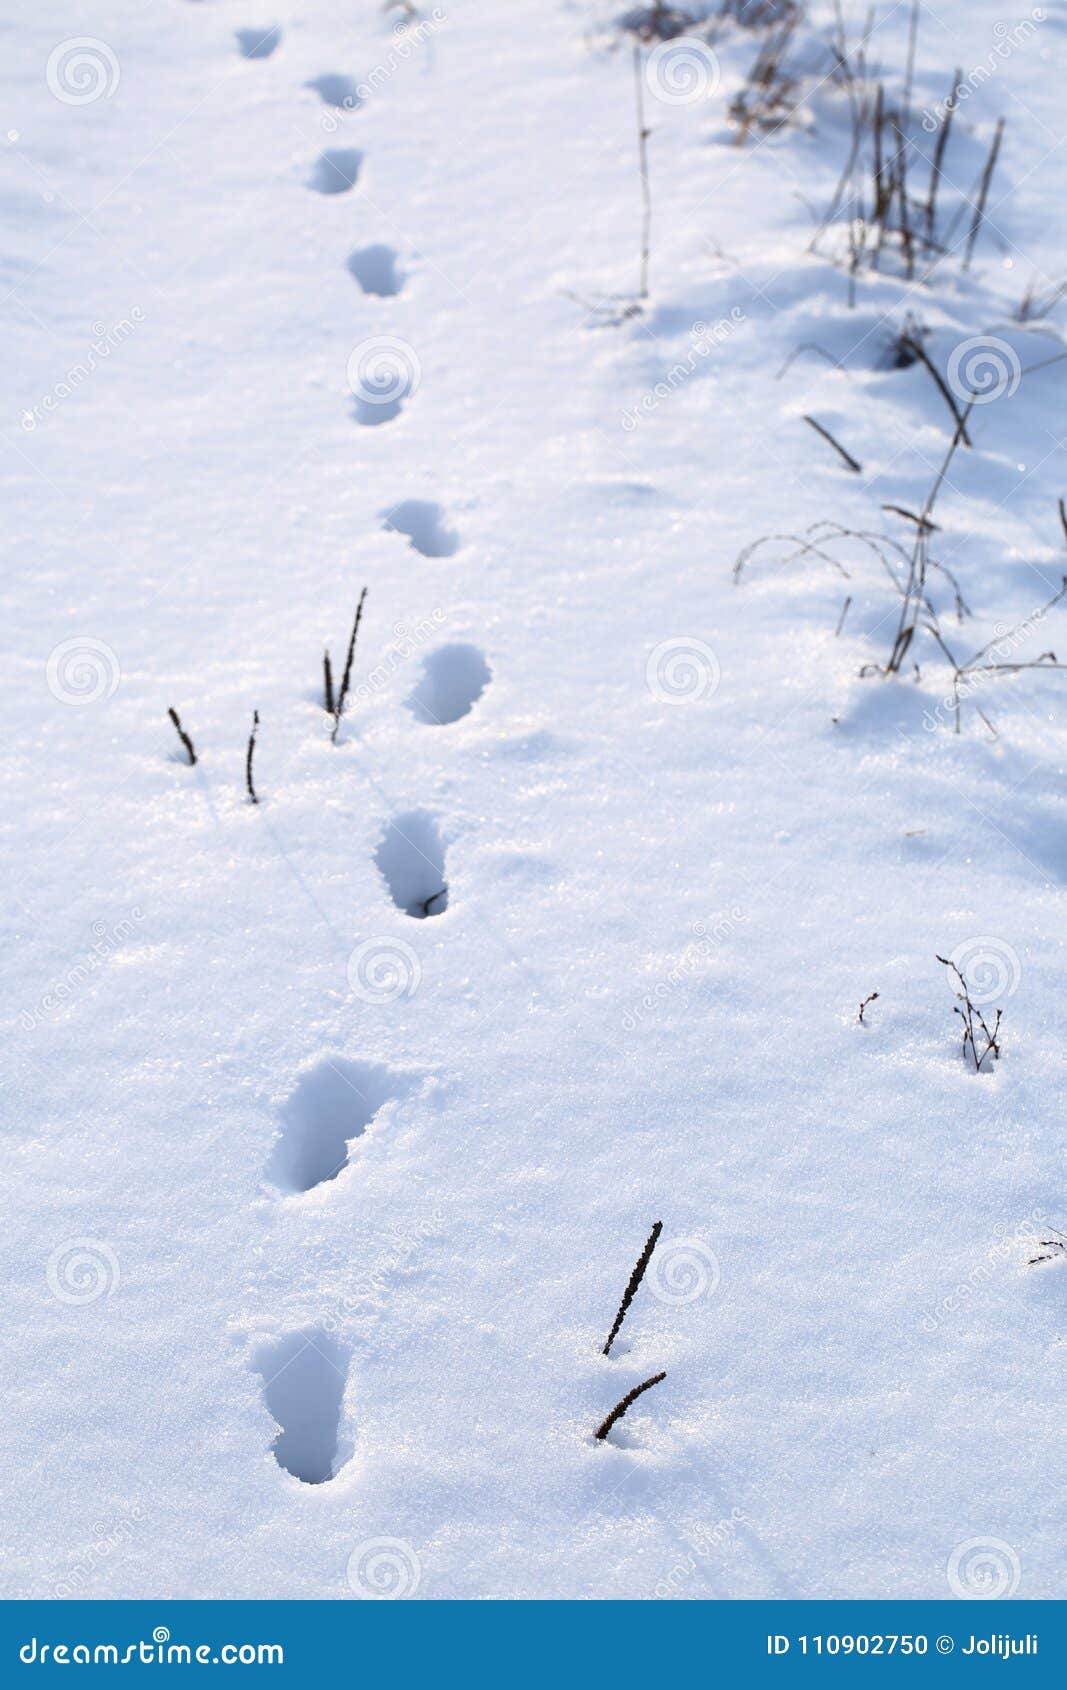 Заячьи и лисьи следы на снегу. Следы зайца русака. Следы зайца заячьи следы. Следы зайца беляка. Заячьи следы на снегу.